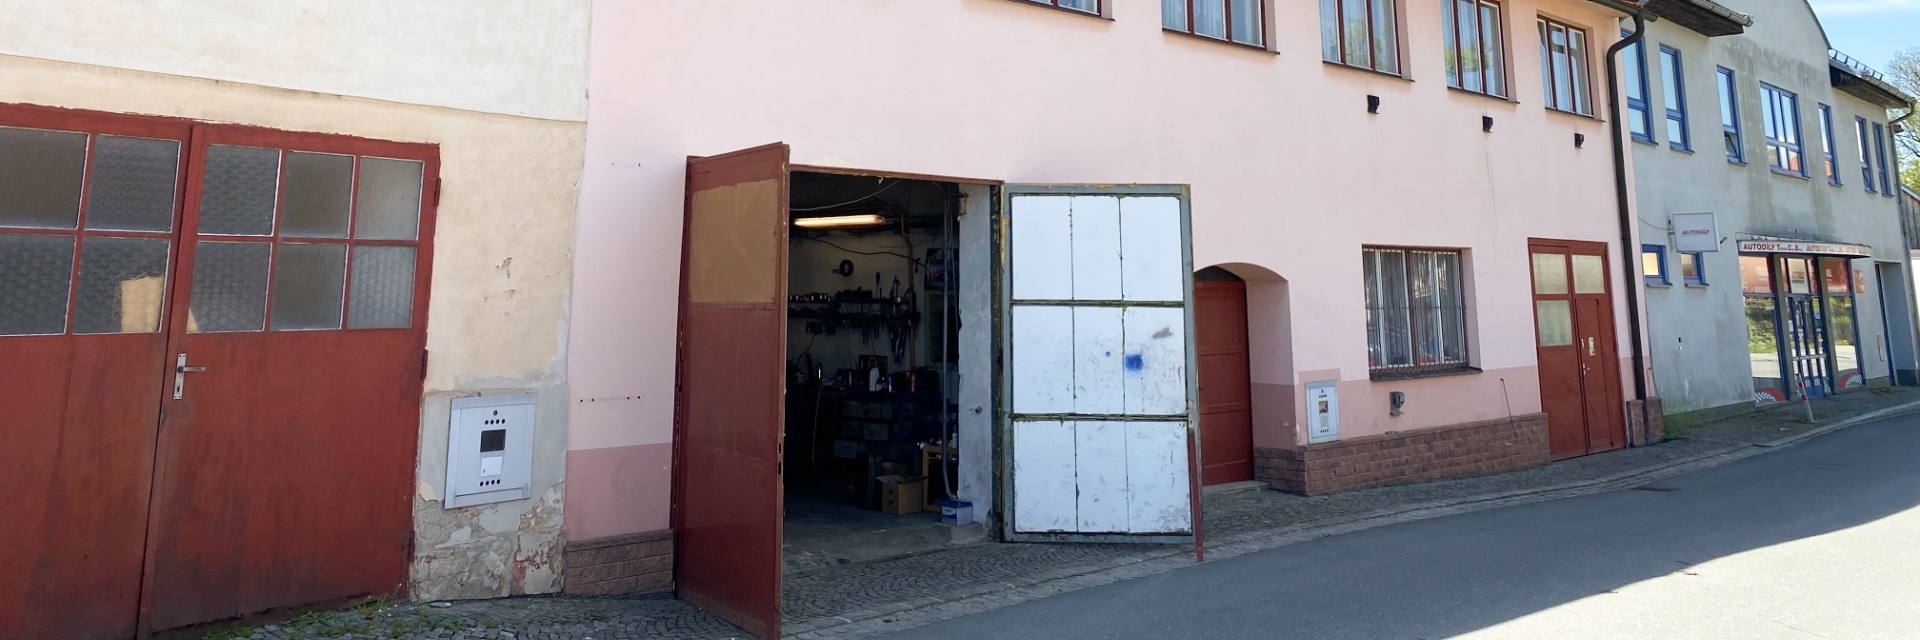 Prodej polyfunkčního objektu se sklady a obytnými plochami v Bystřici nad Pernštejnem